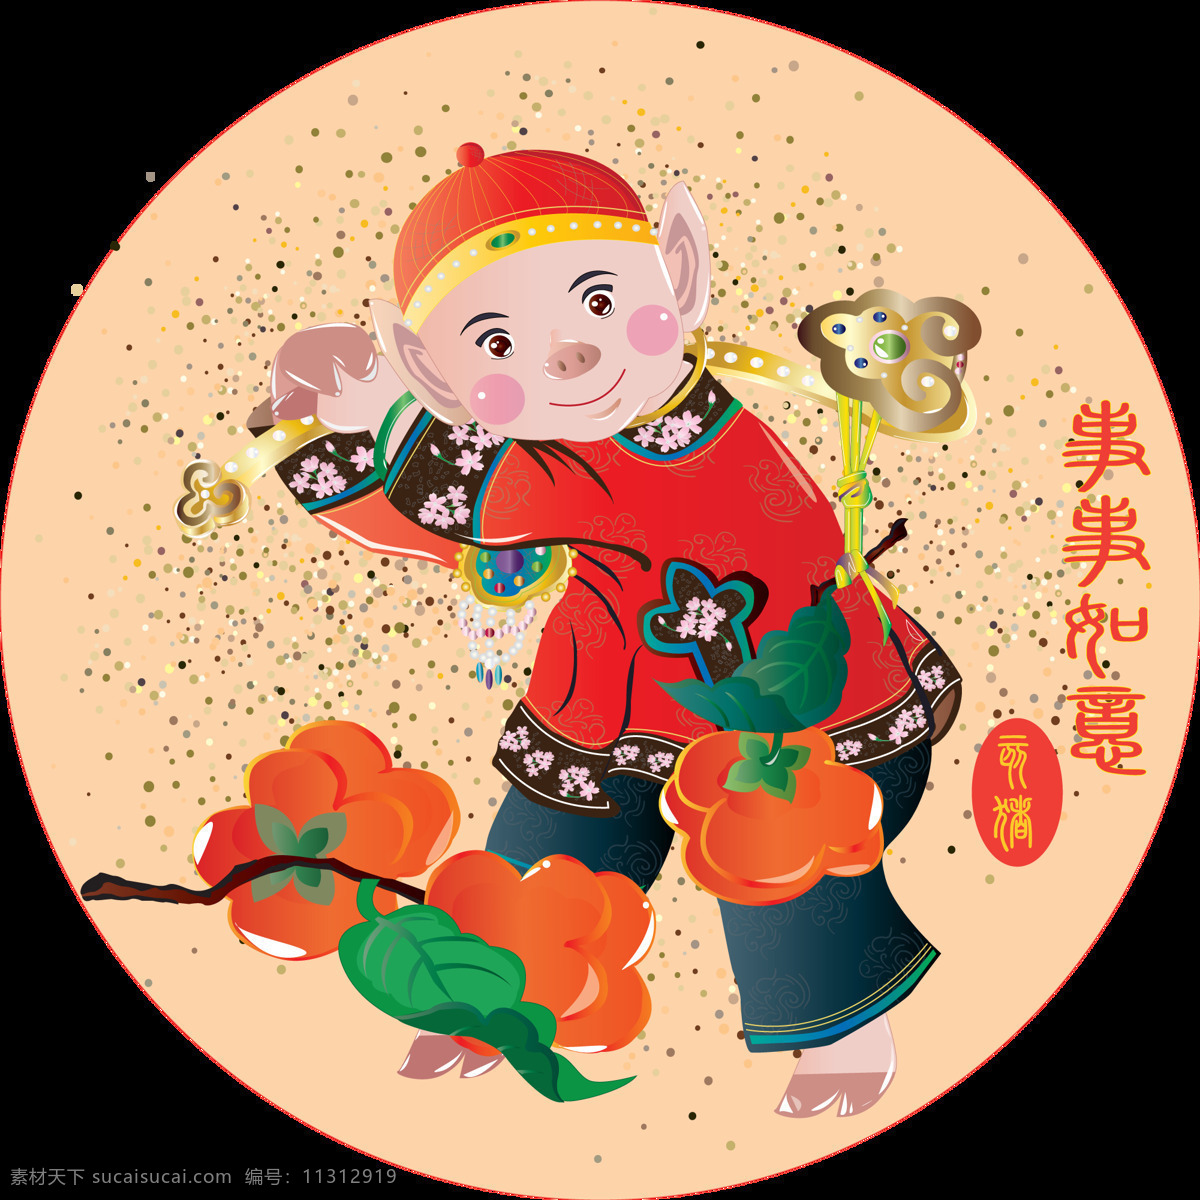 2019 生肖 猪 猪年 原创 商用 元素 年画 如意 中国风 可爱 卡通猪 事事如意 柿子 年味 手绘 2019猪年 富贵